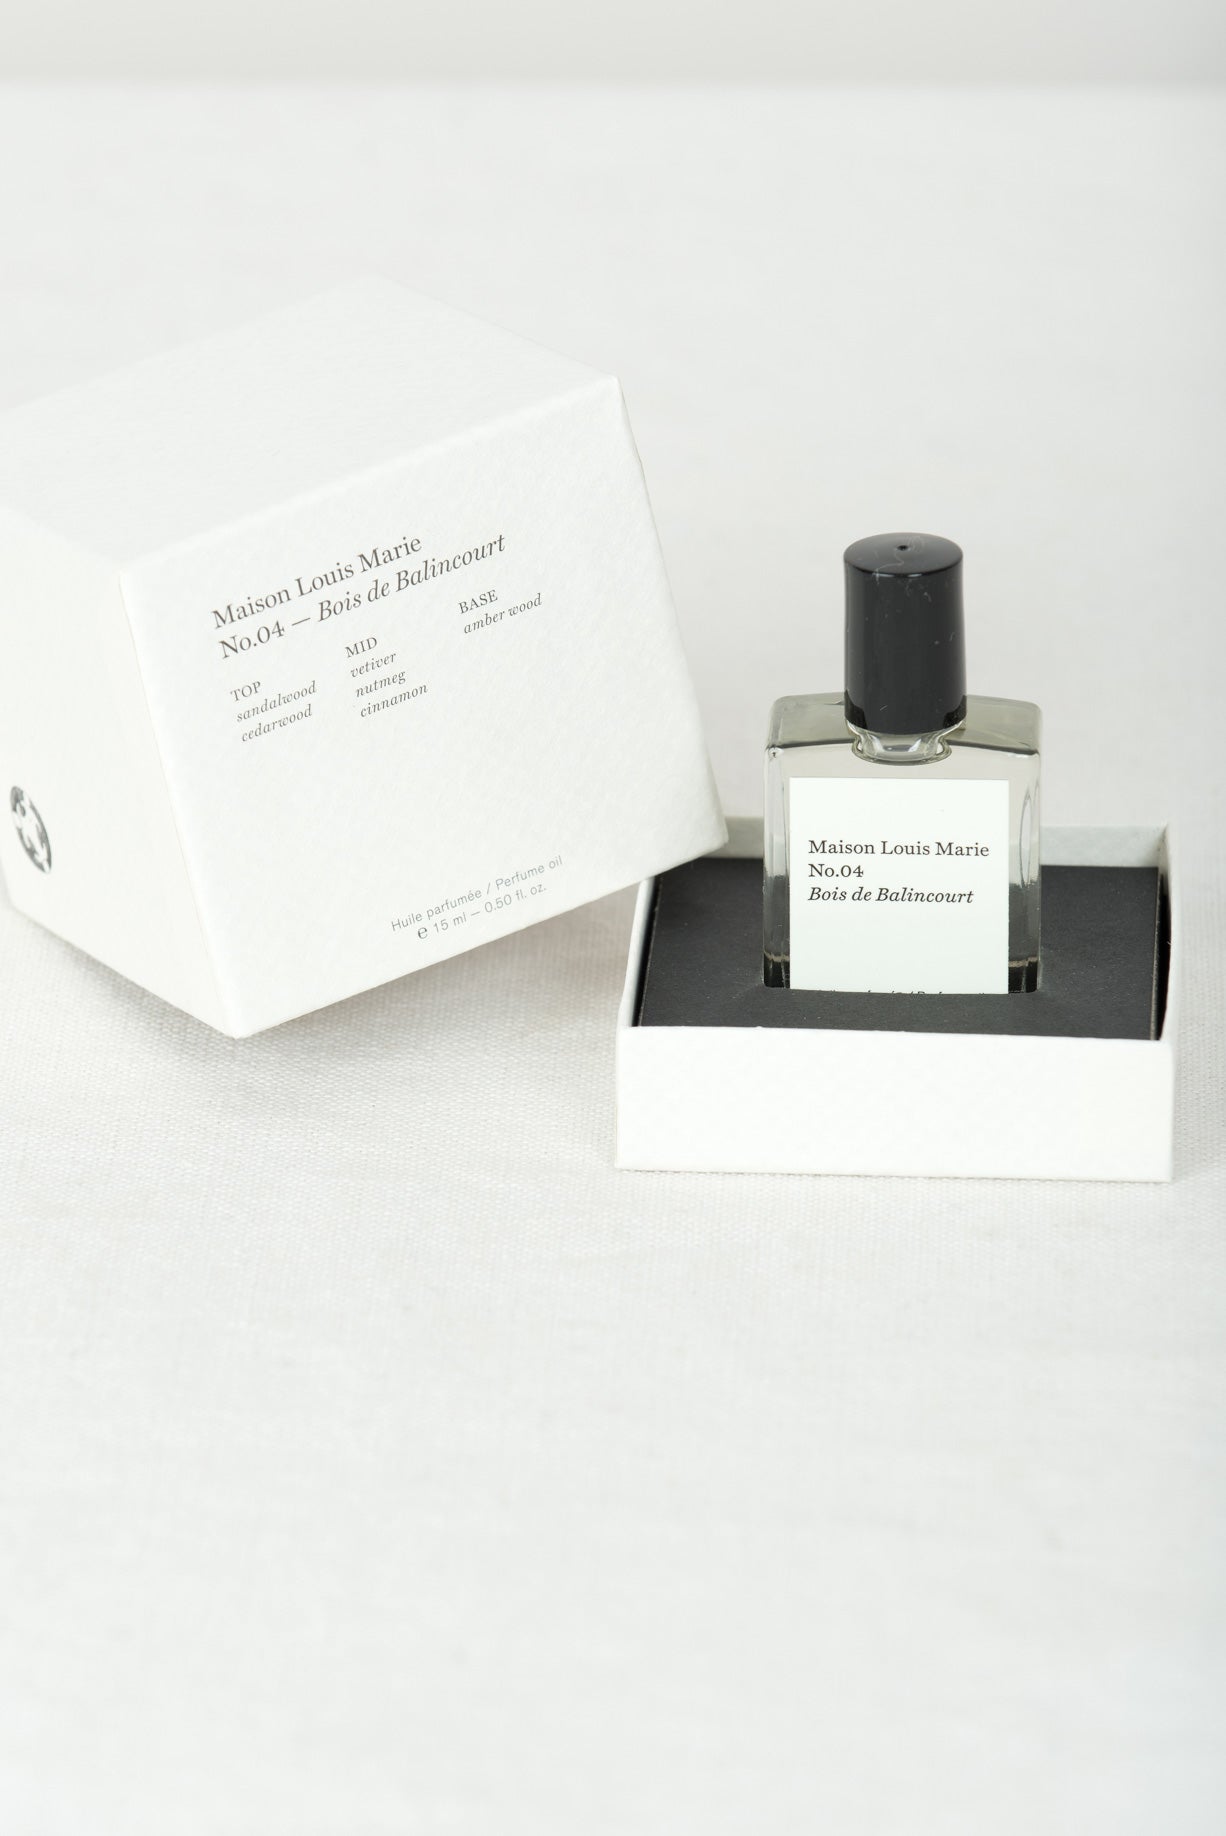 Maison Louis Marie No. 04 Bois de Balincourt Eau Parfum 1.7 oz Brand New in  Box